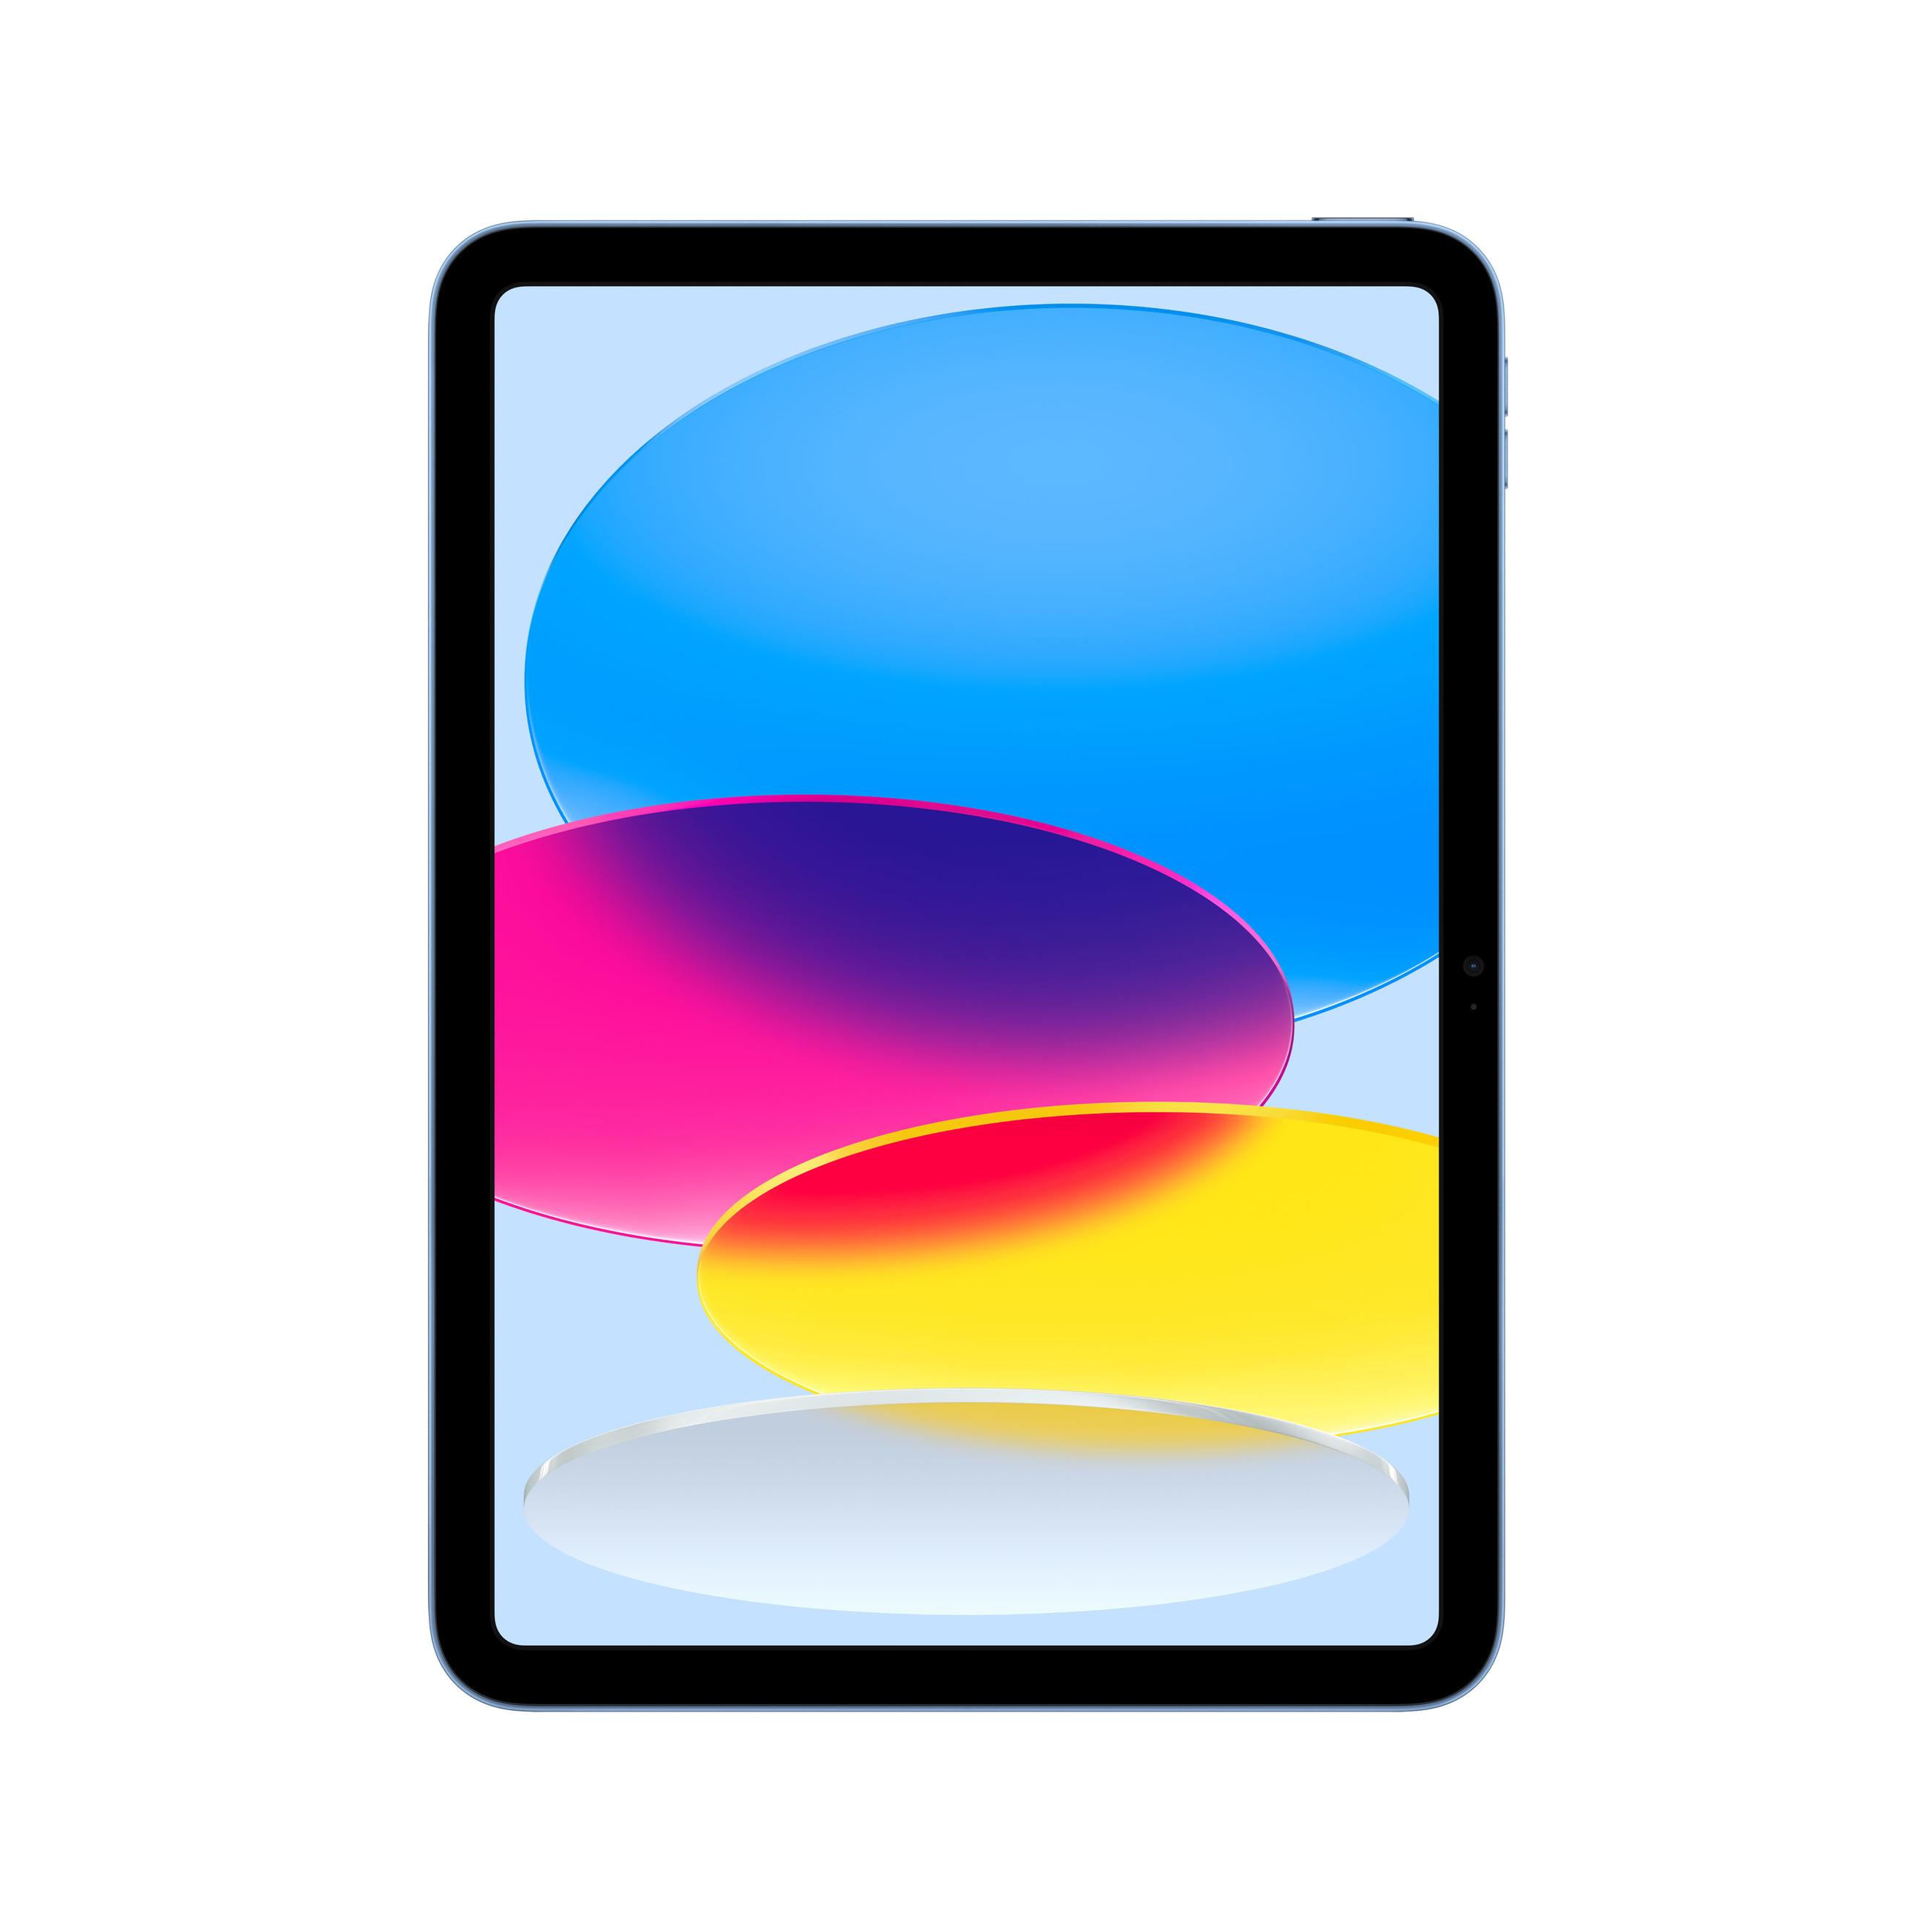 Offerta per Apple - iPad (10^gen.) 10.9 Wi-Fi 256GB - Blu a 599€ in Comet